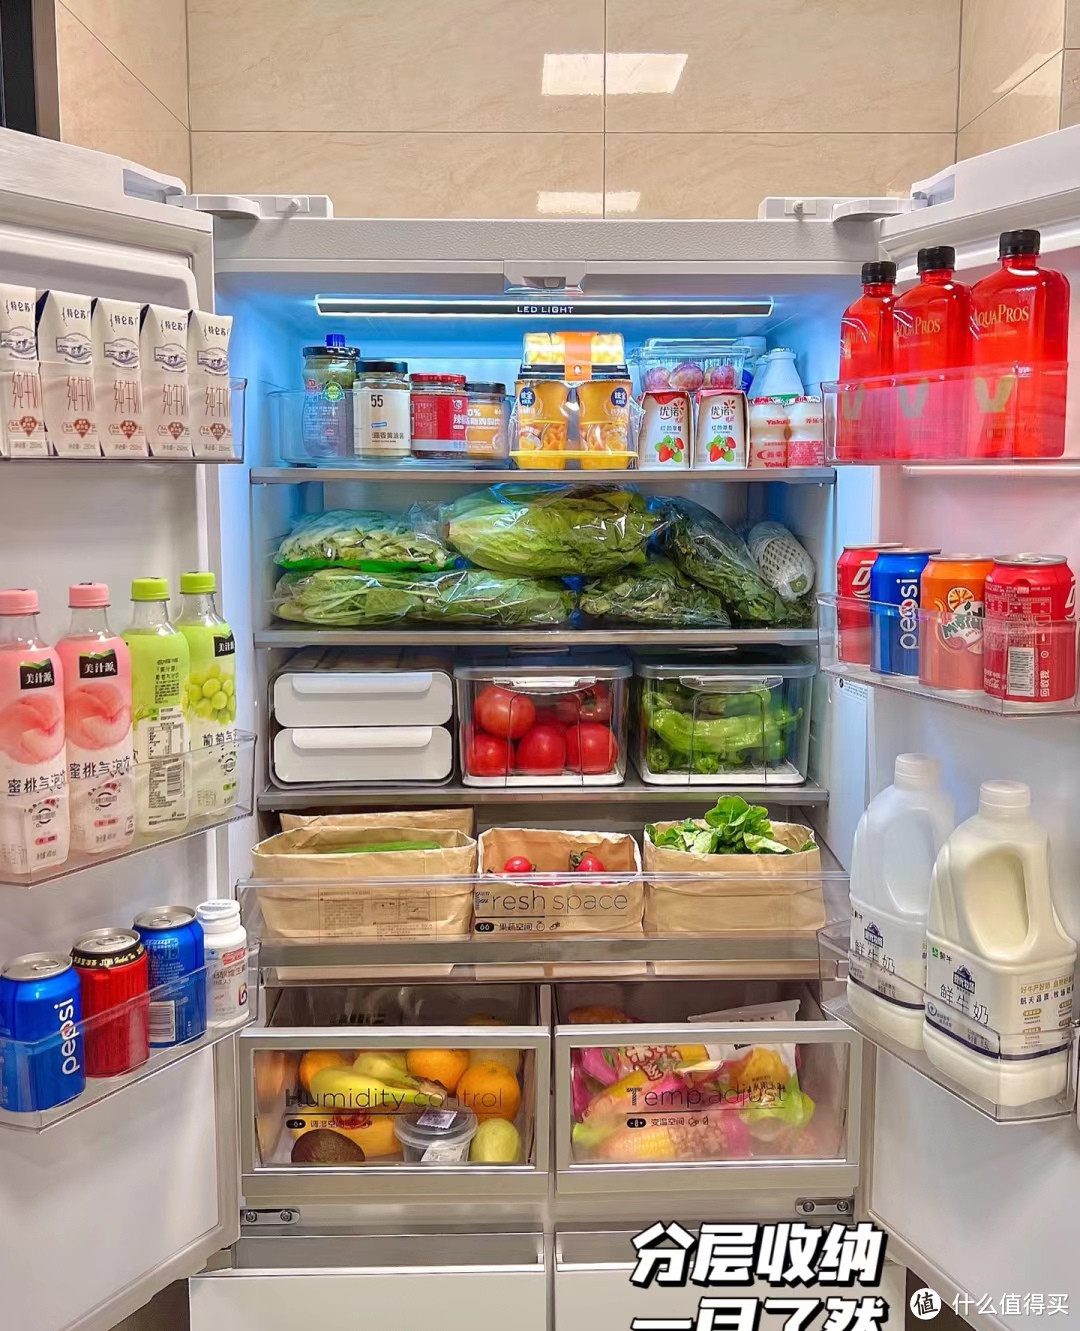 🌟 冰箱收纳 – 构建整洁有序的冰箱空间 🌟